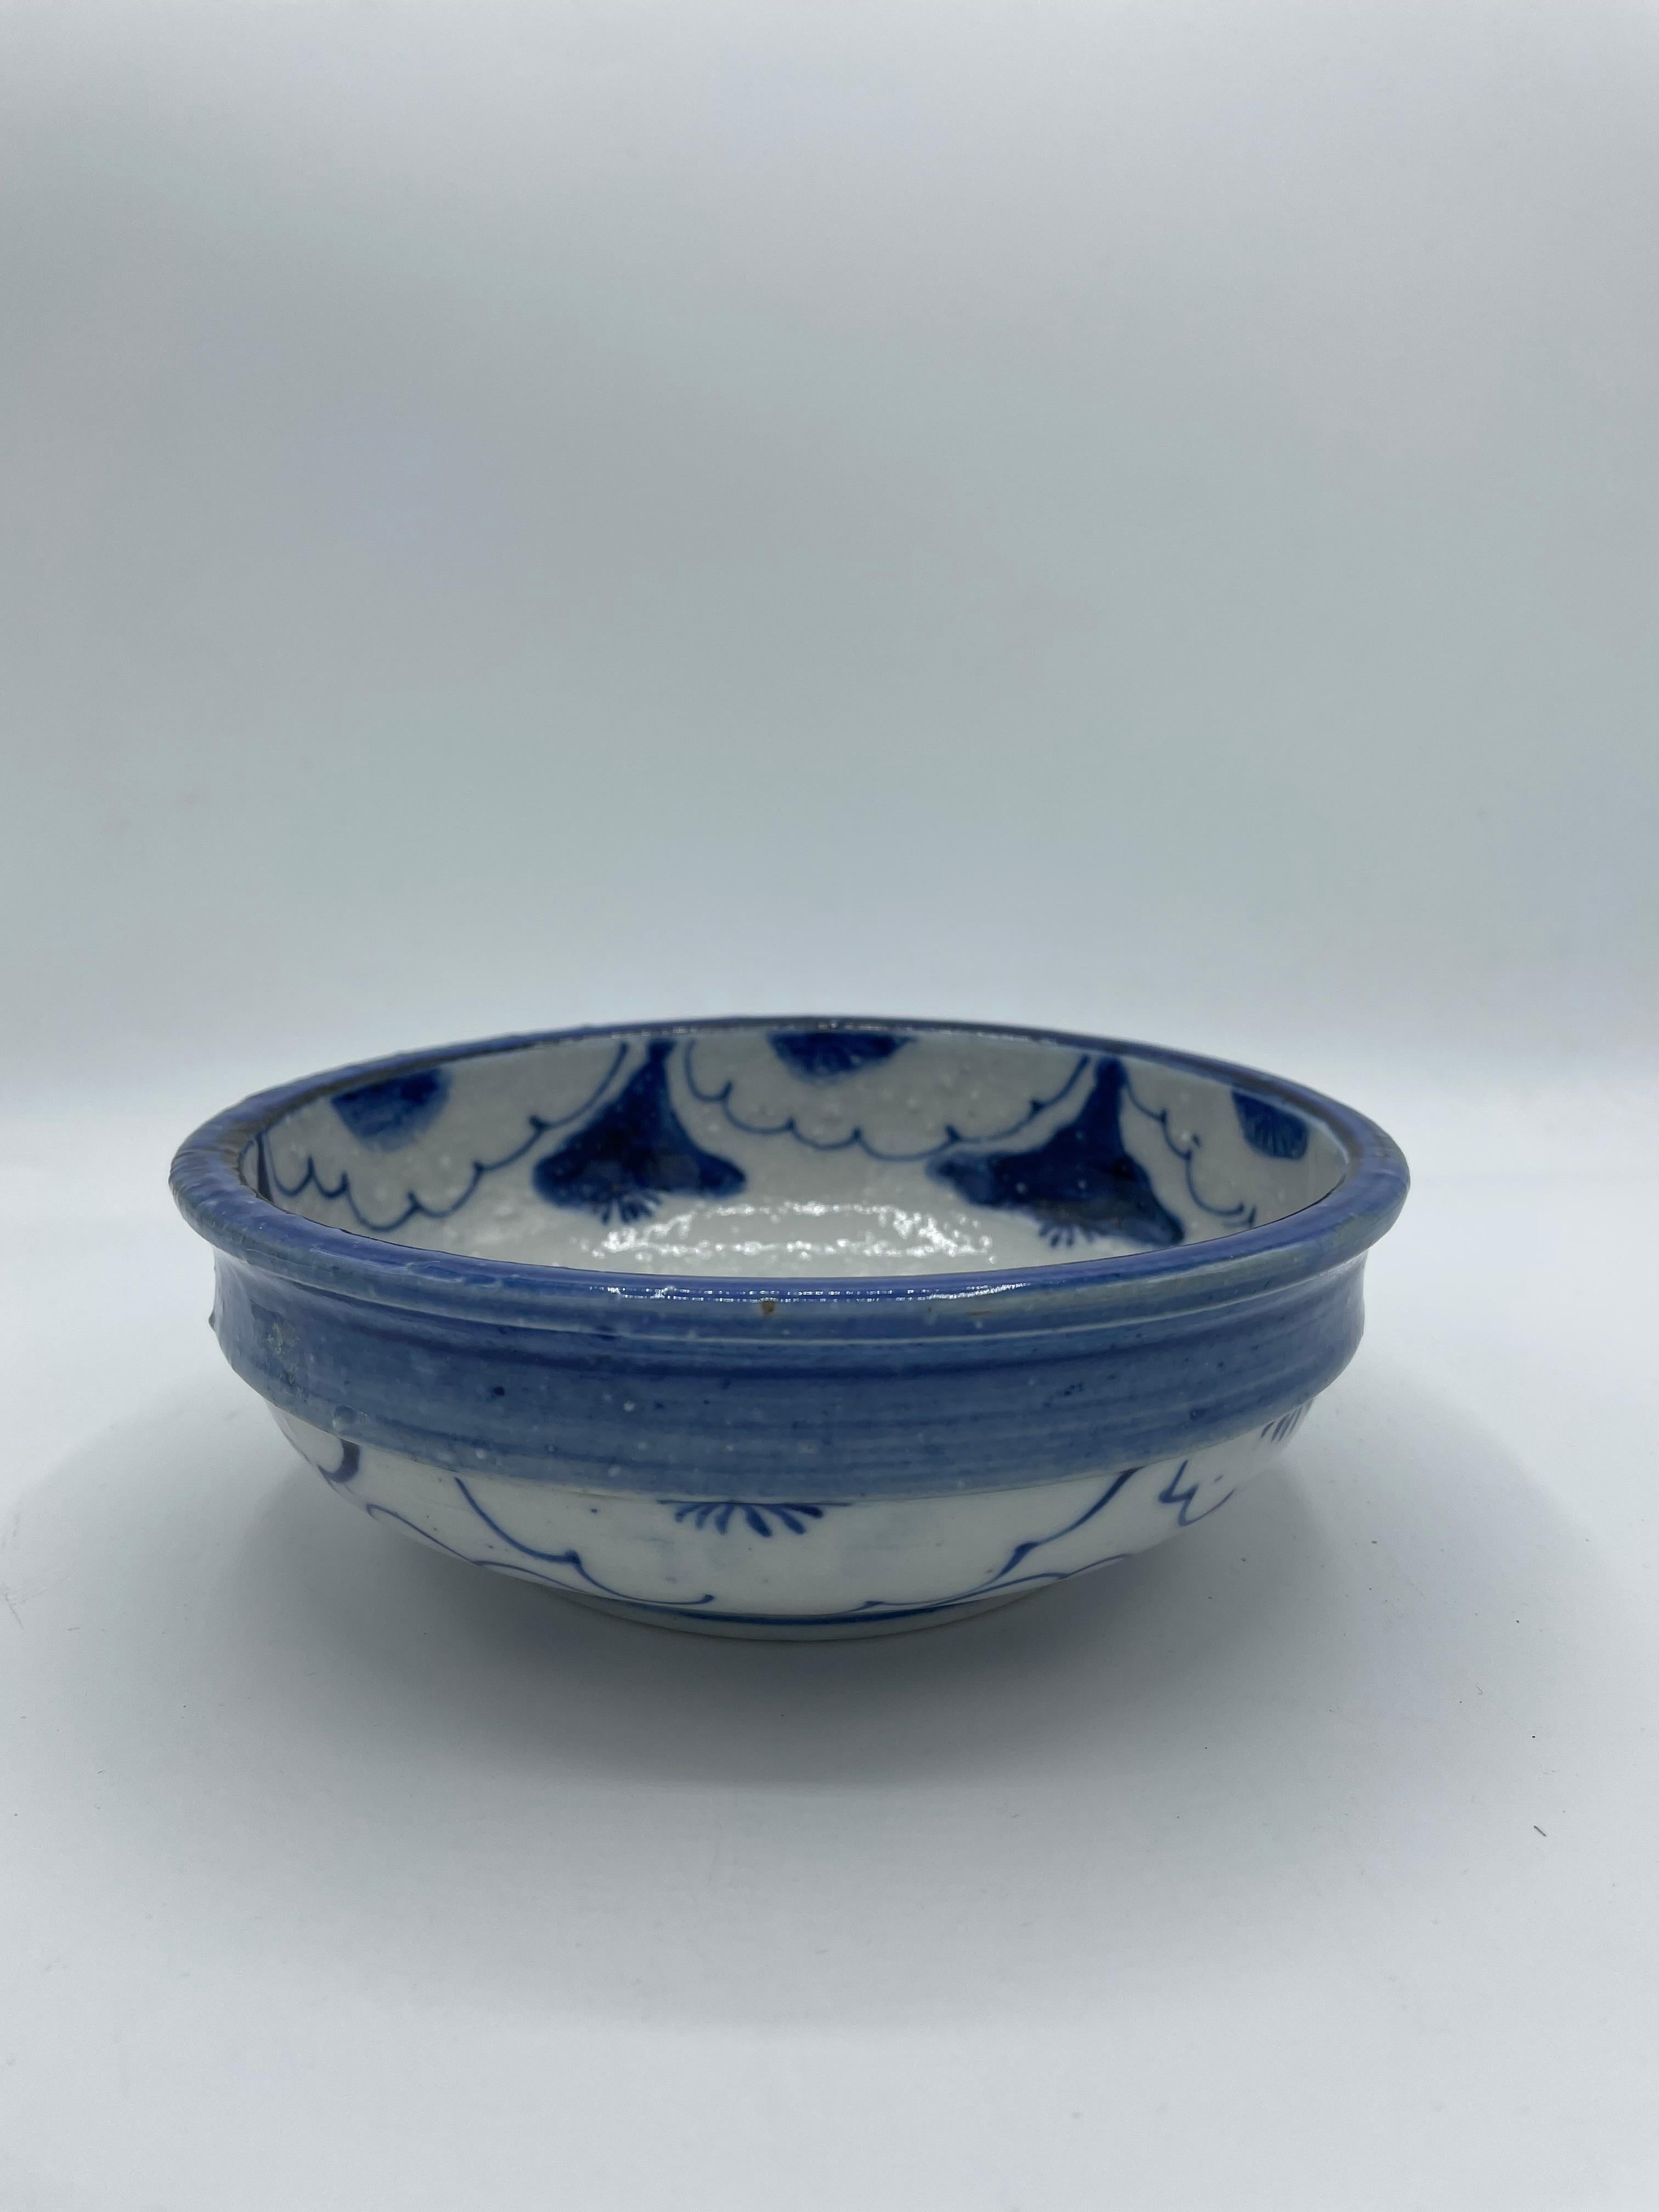 Ce bol de service est fabriqué en porcelaine. 
 Il a été fabriqué vers 1920 à l'époque Taisho au Japon. 
Le motif de la peinture est constitué de quelques fleurs. Tout est peint à la main. 

Dimensions : 
16,5 x 16,5 x H6 cm 

